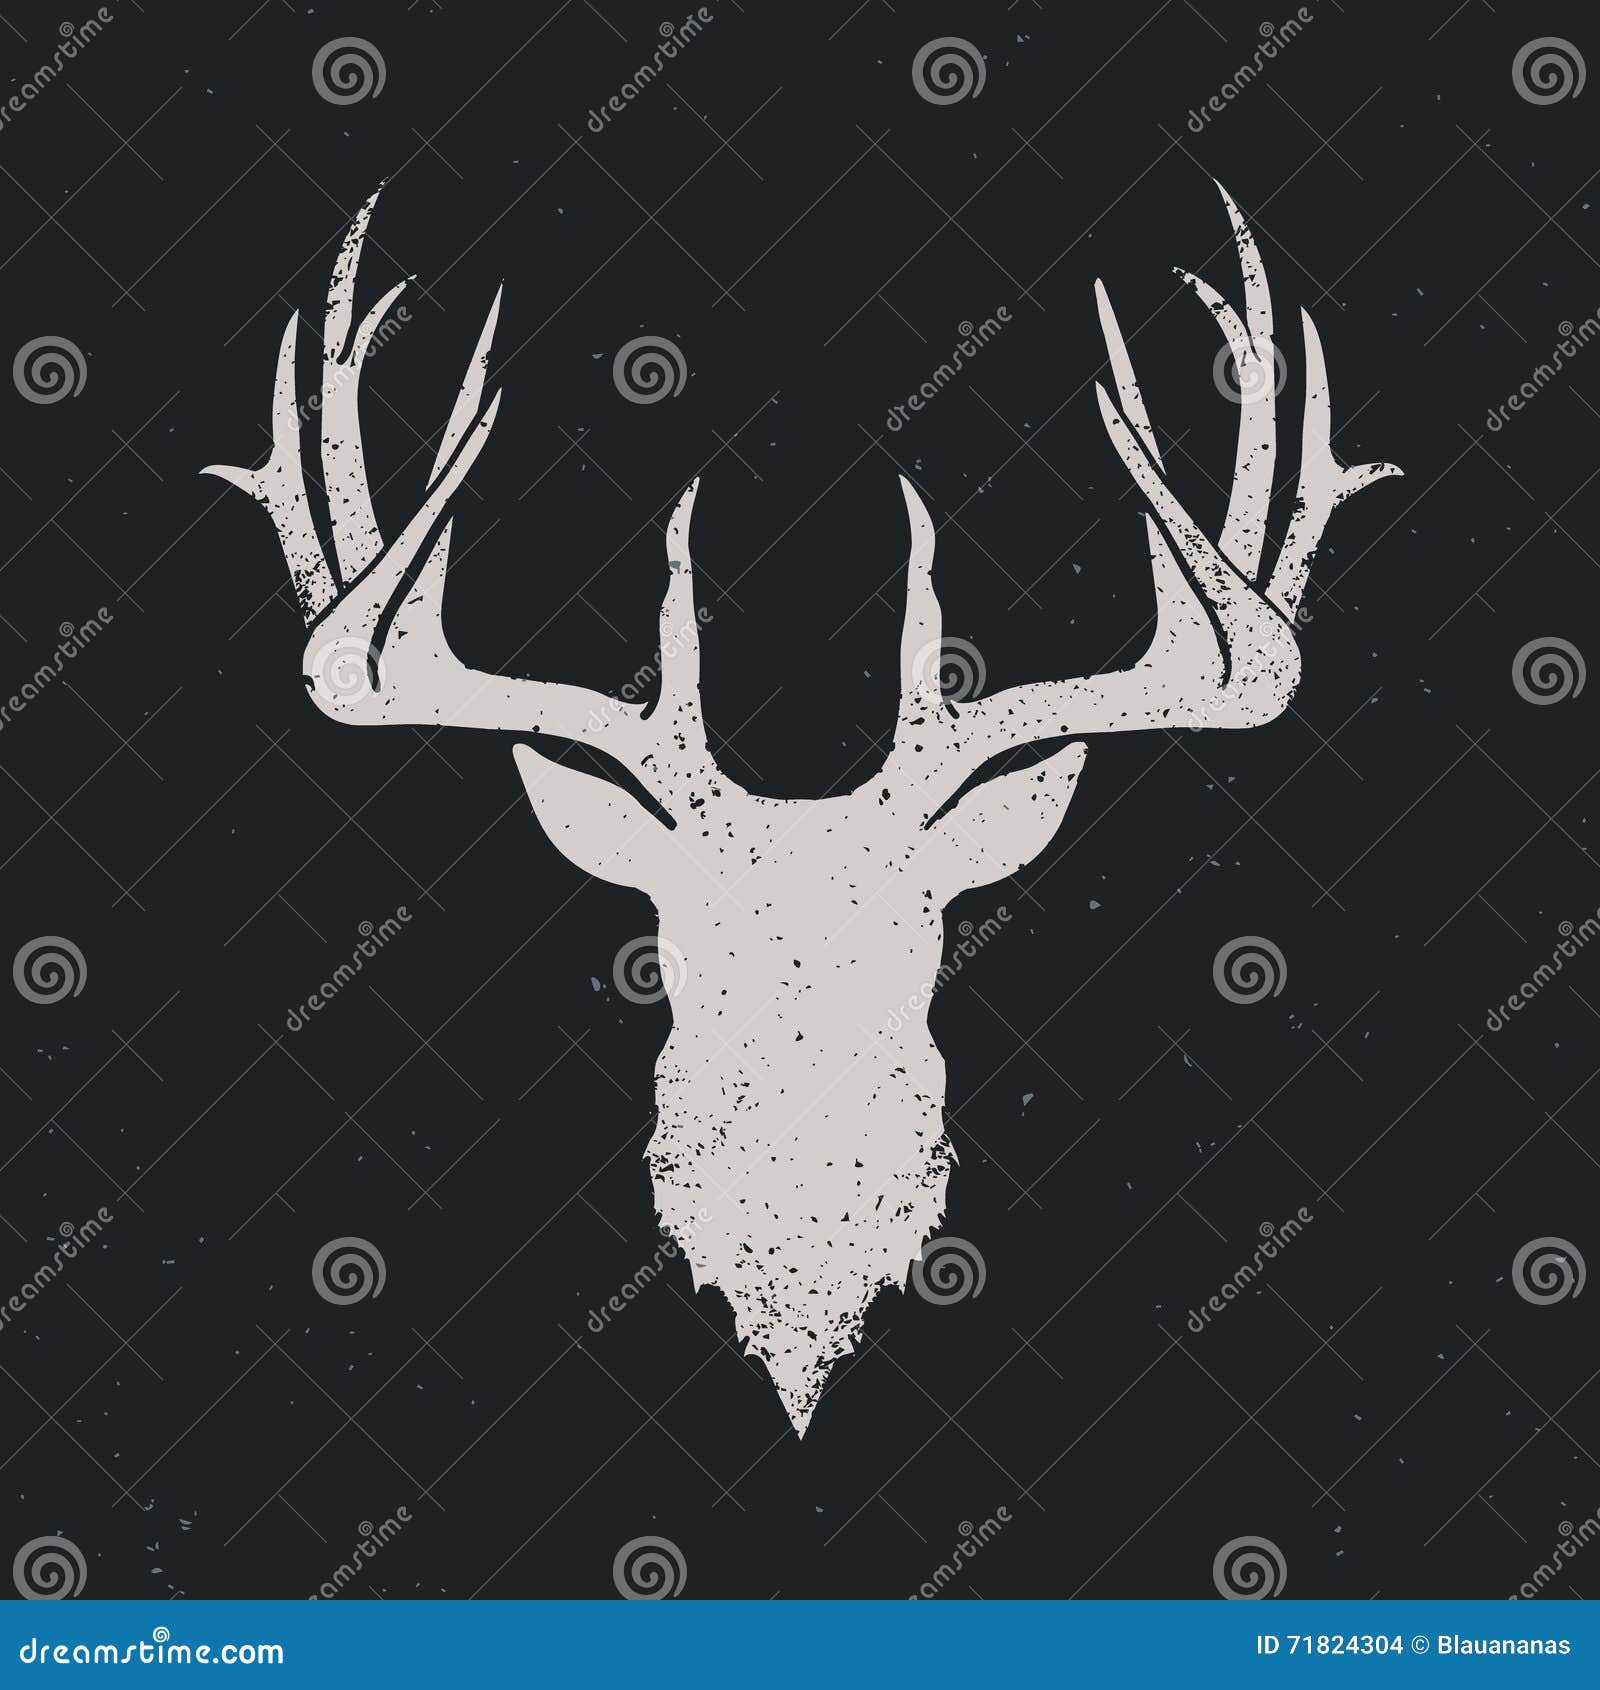 deer head silhouette invert